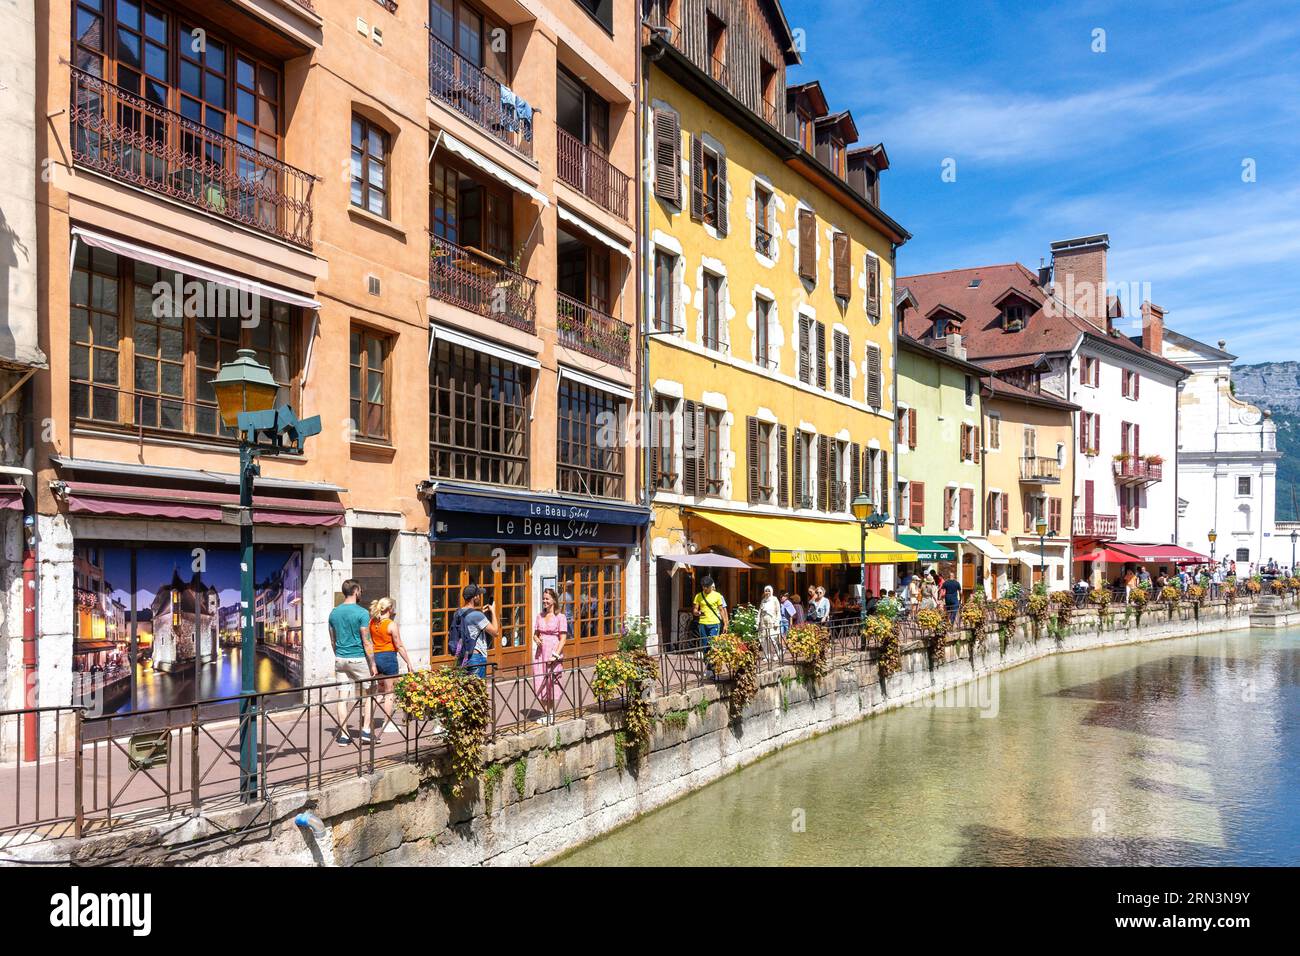 Riverside Quai de l'Évêché, Vieille Ville, Annecy, Haute-Savoie, Auvergne-Rhône-Alpes, France Stock Photo